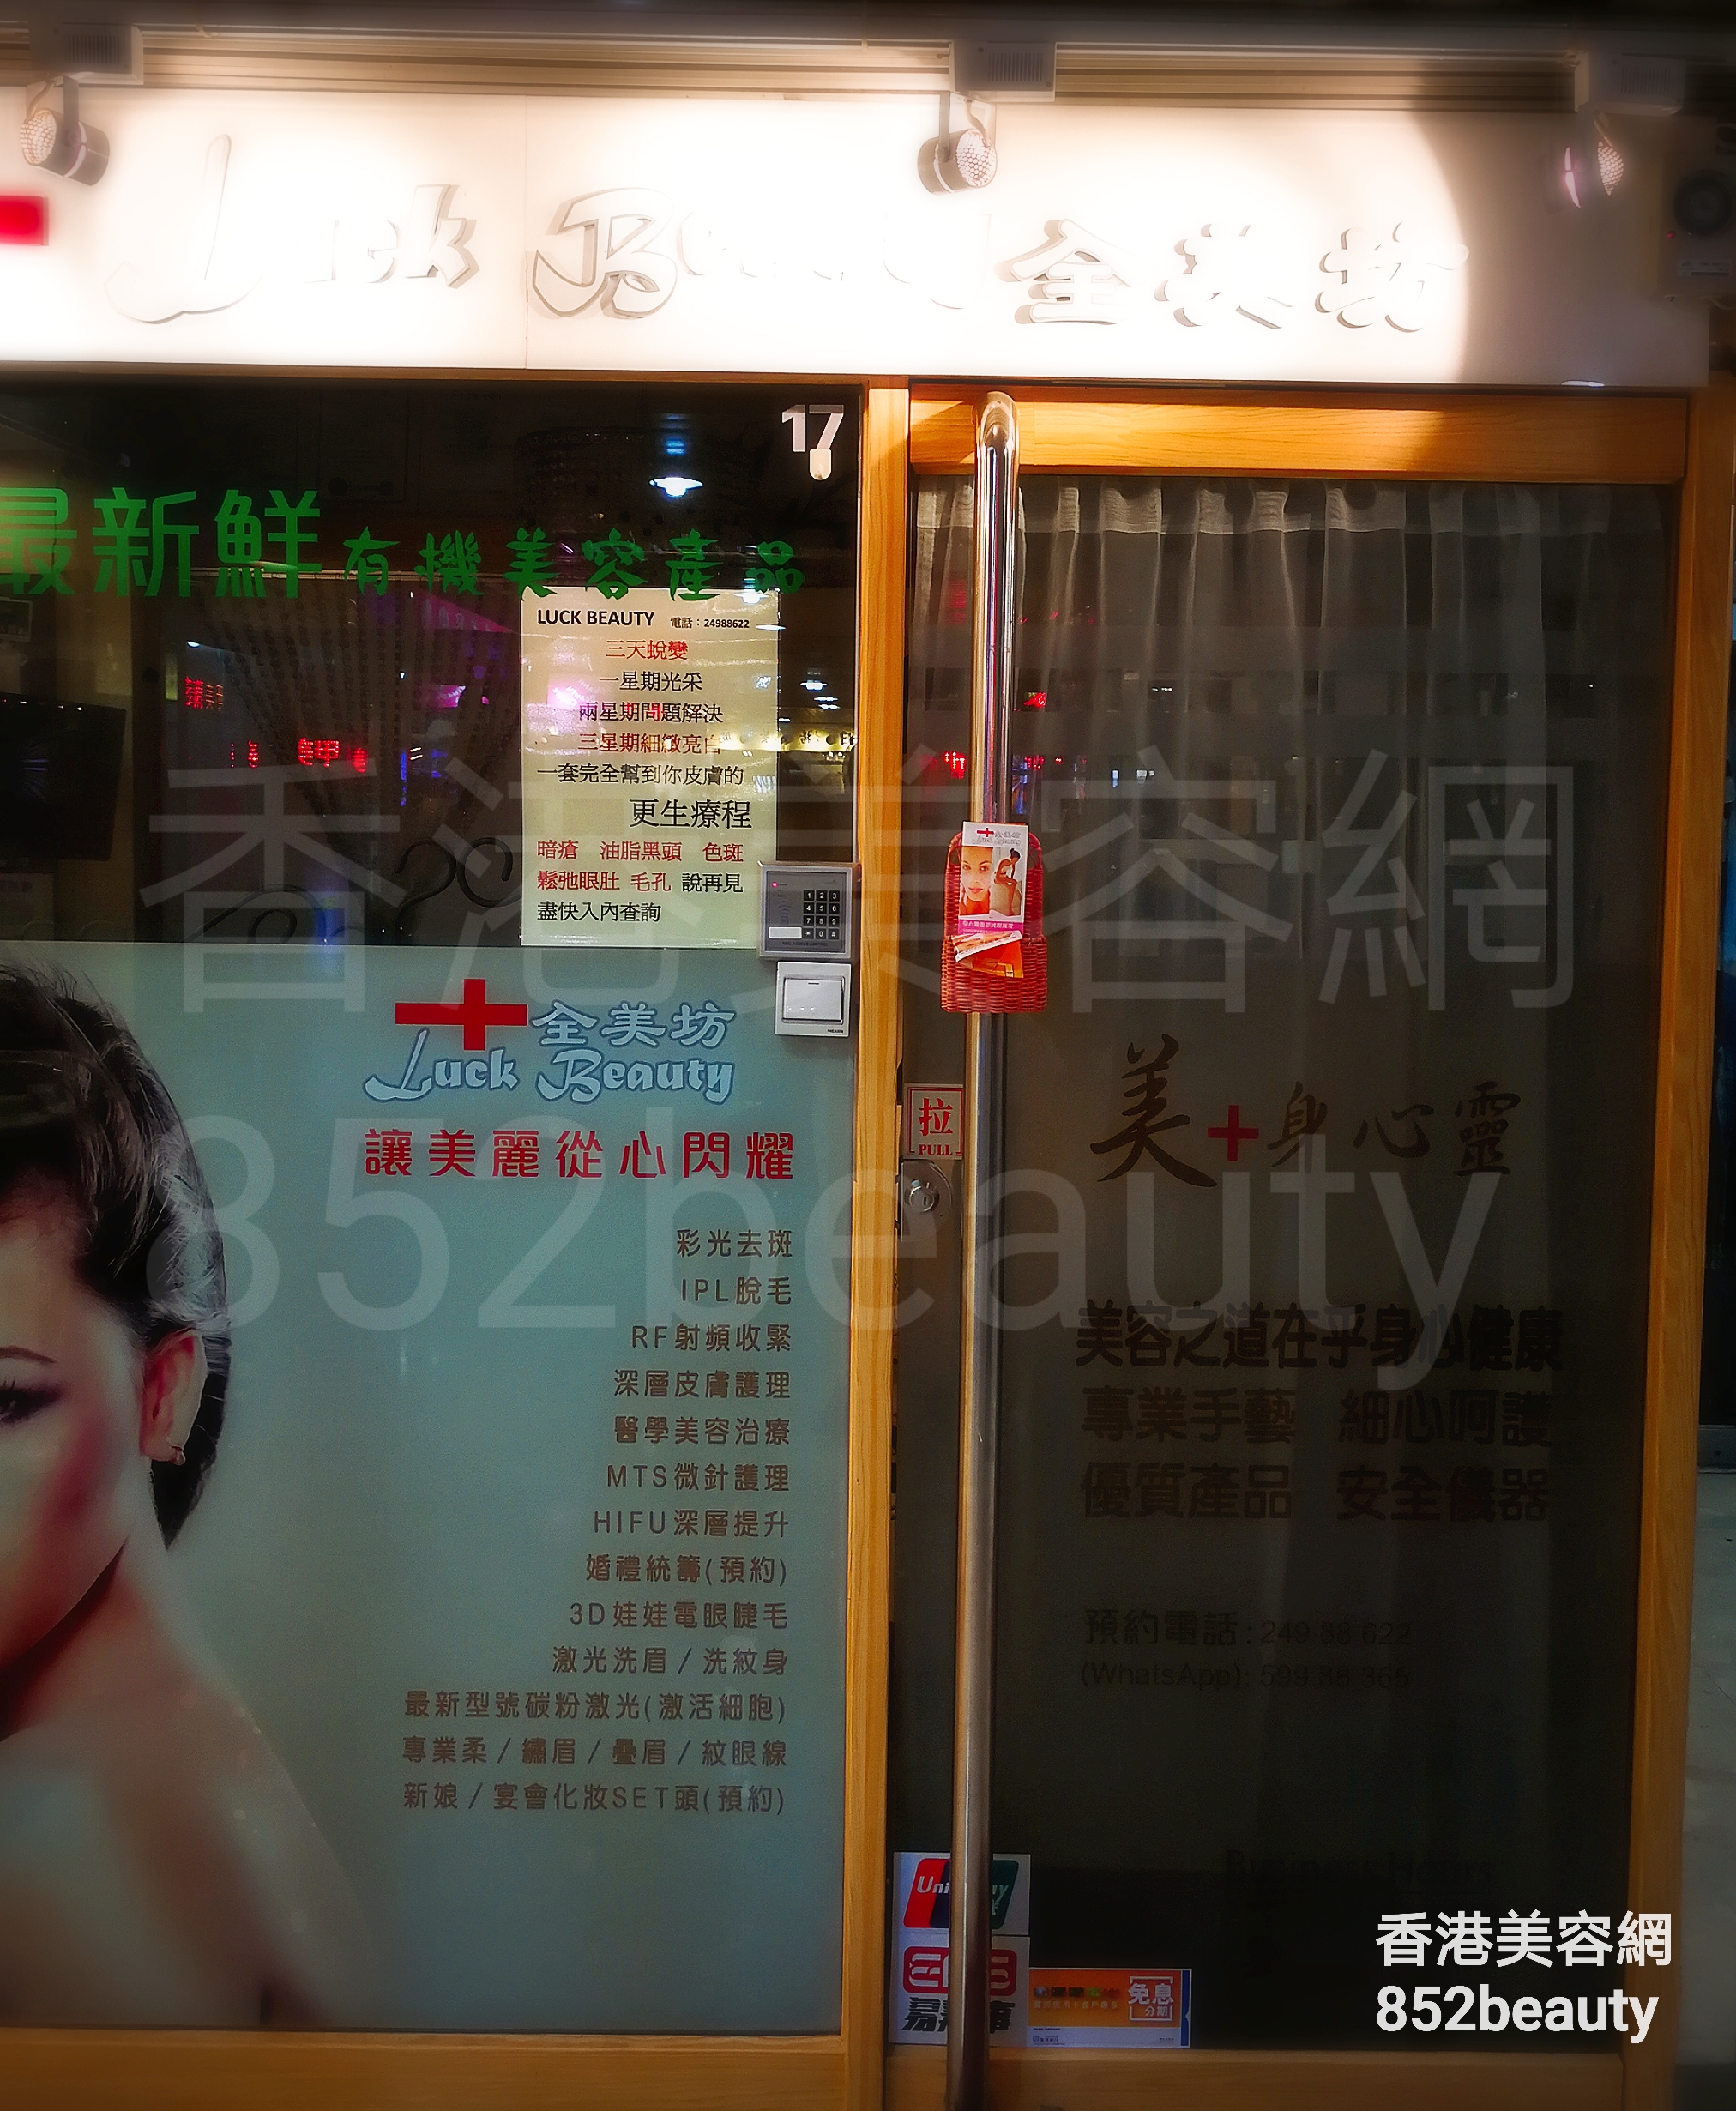 美容院 Beauty Salon: Luck Beauty 全美坊 (荃灣店)